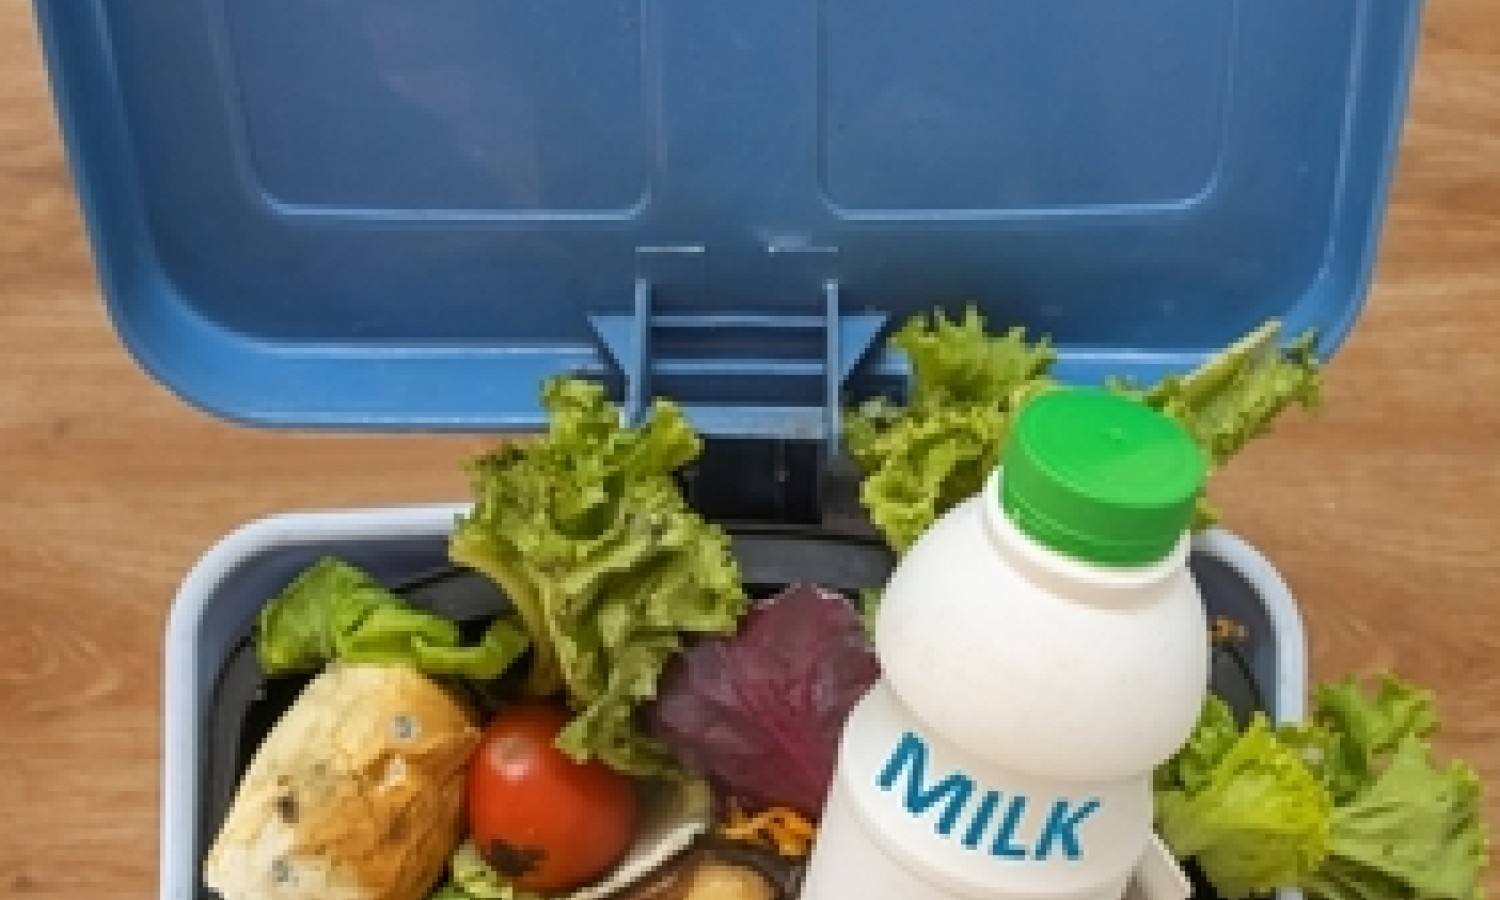 Le etichette intelligenti possono ridurre gli sprechi alimentari